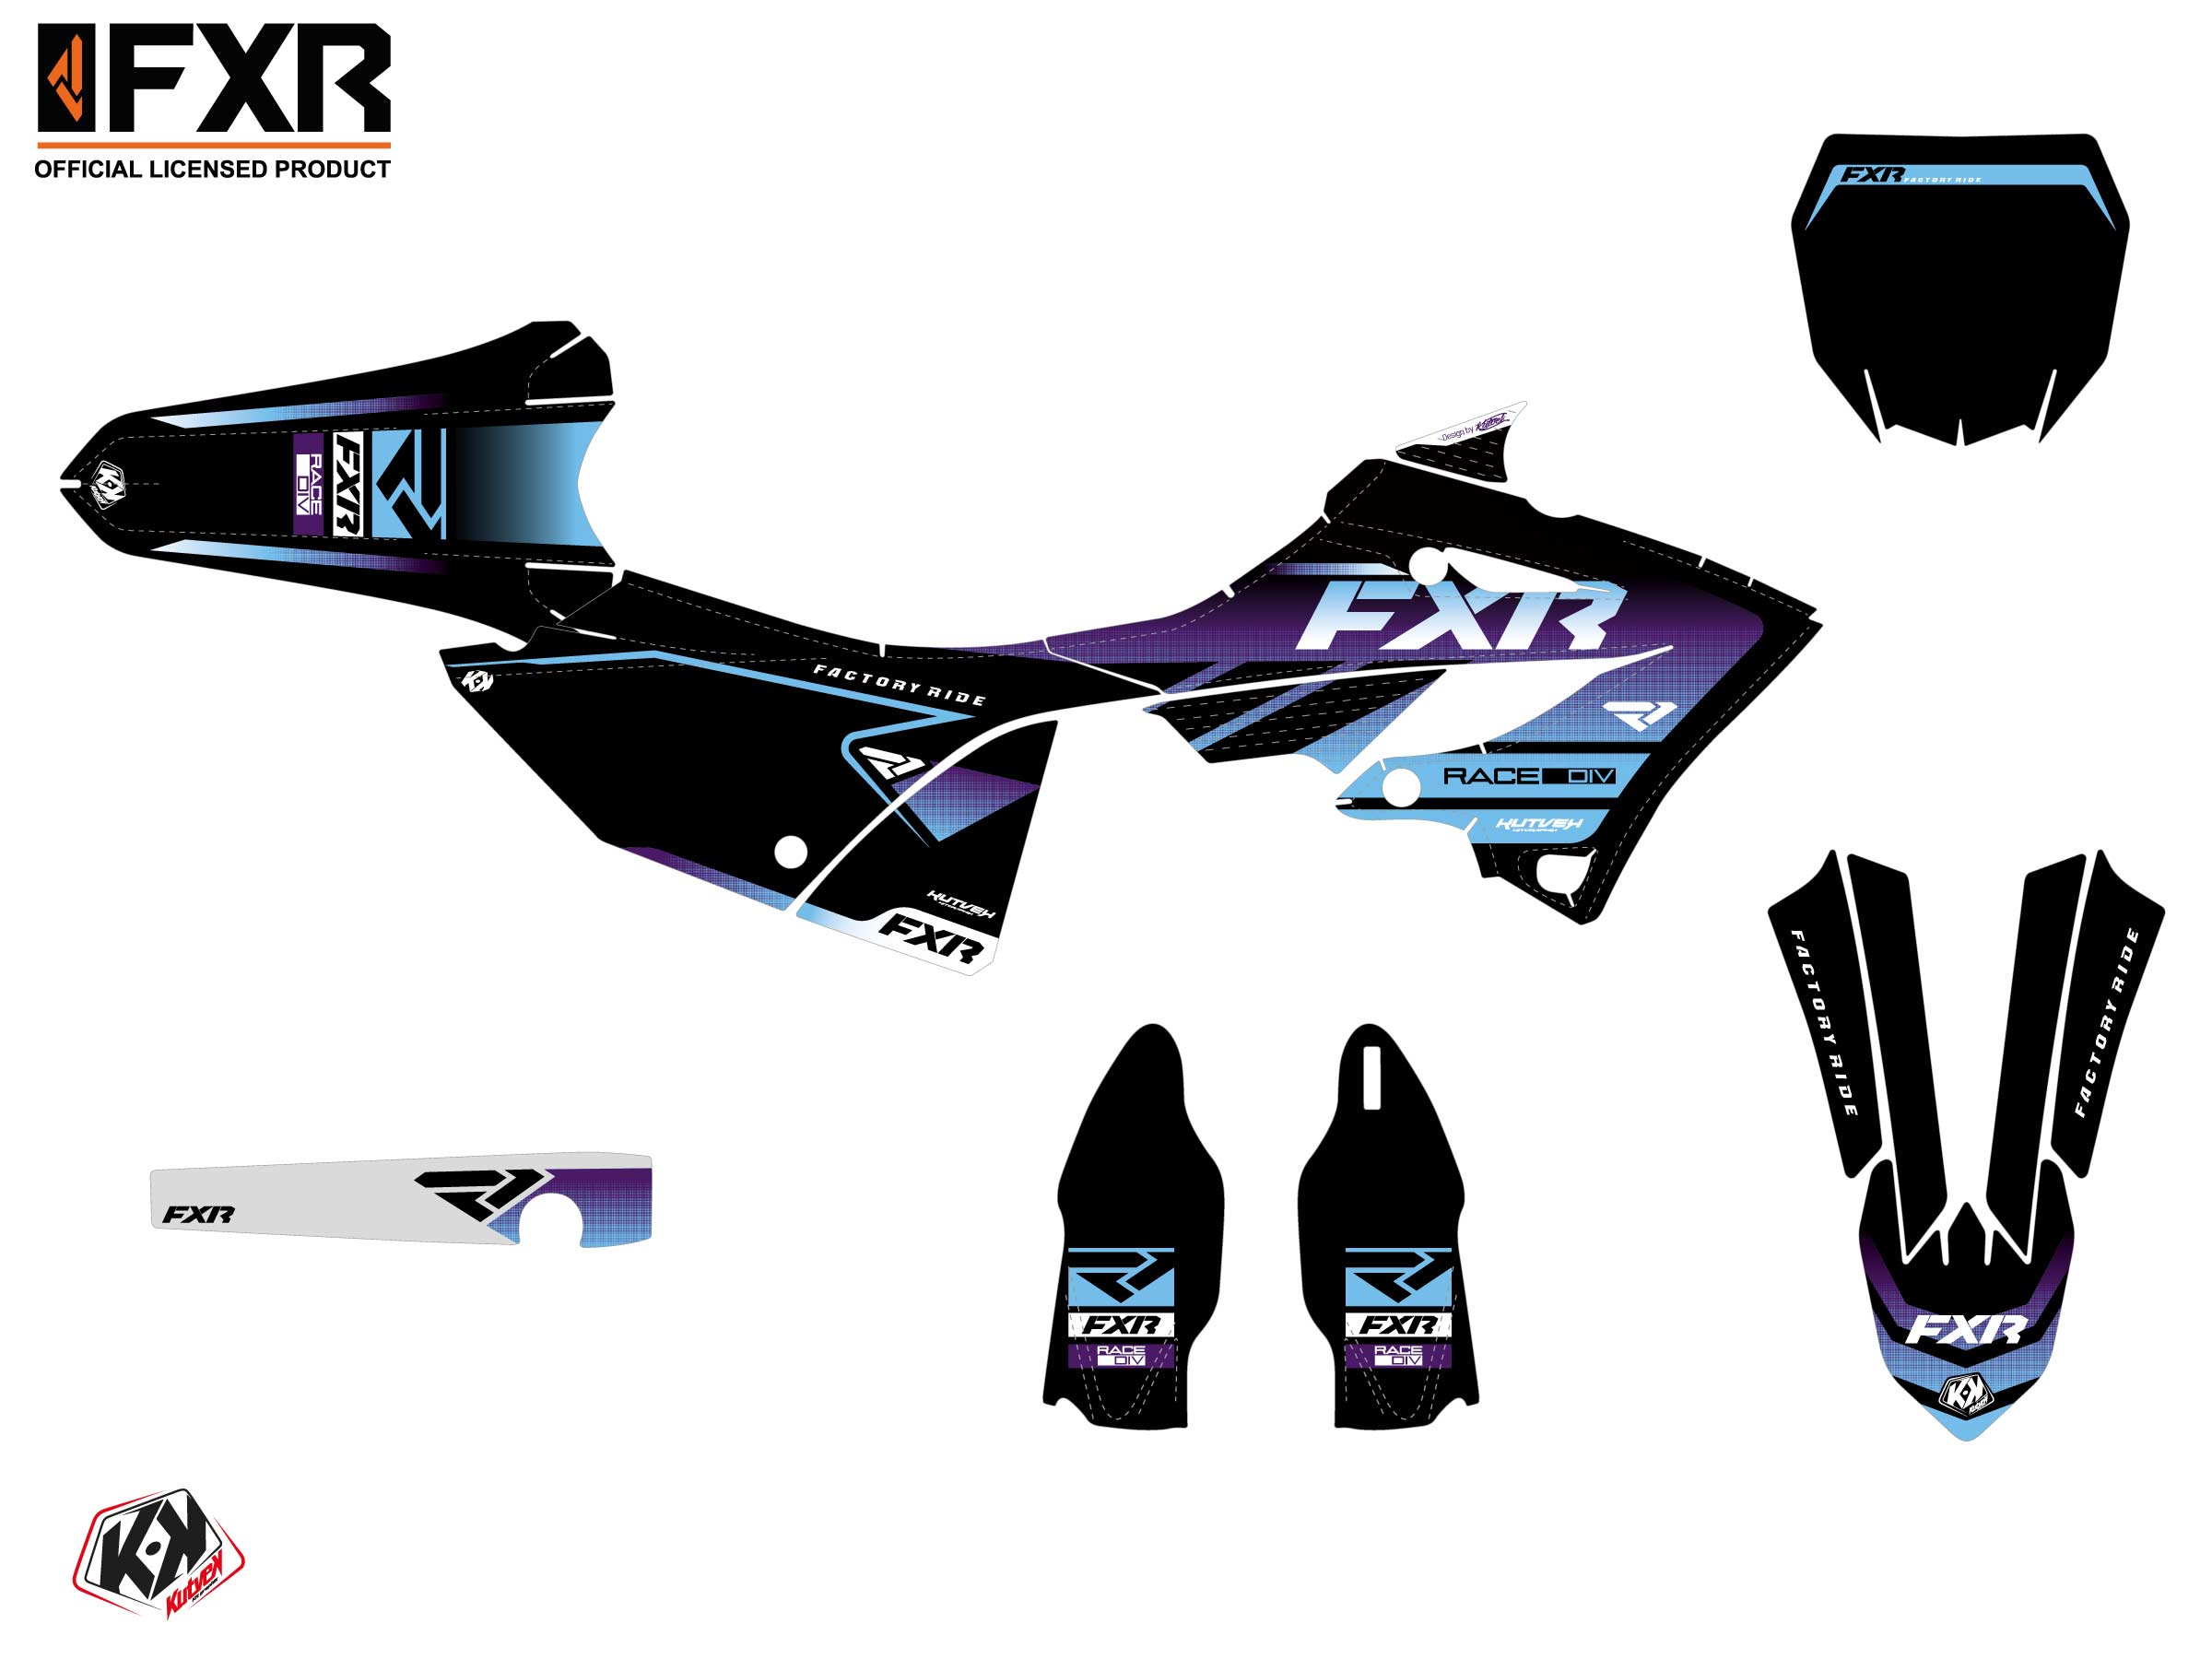 Yamaha Yz 125 Dirt Bike Fxr Revo Graphic Kit Purple